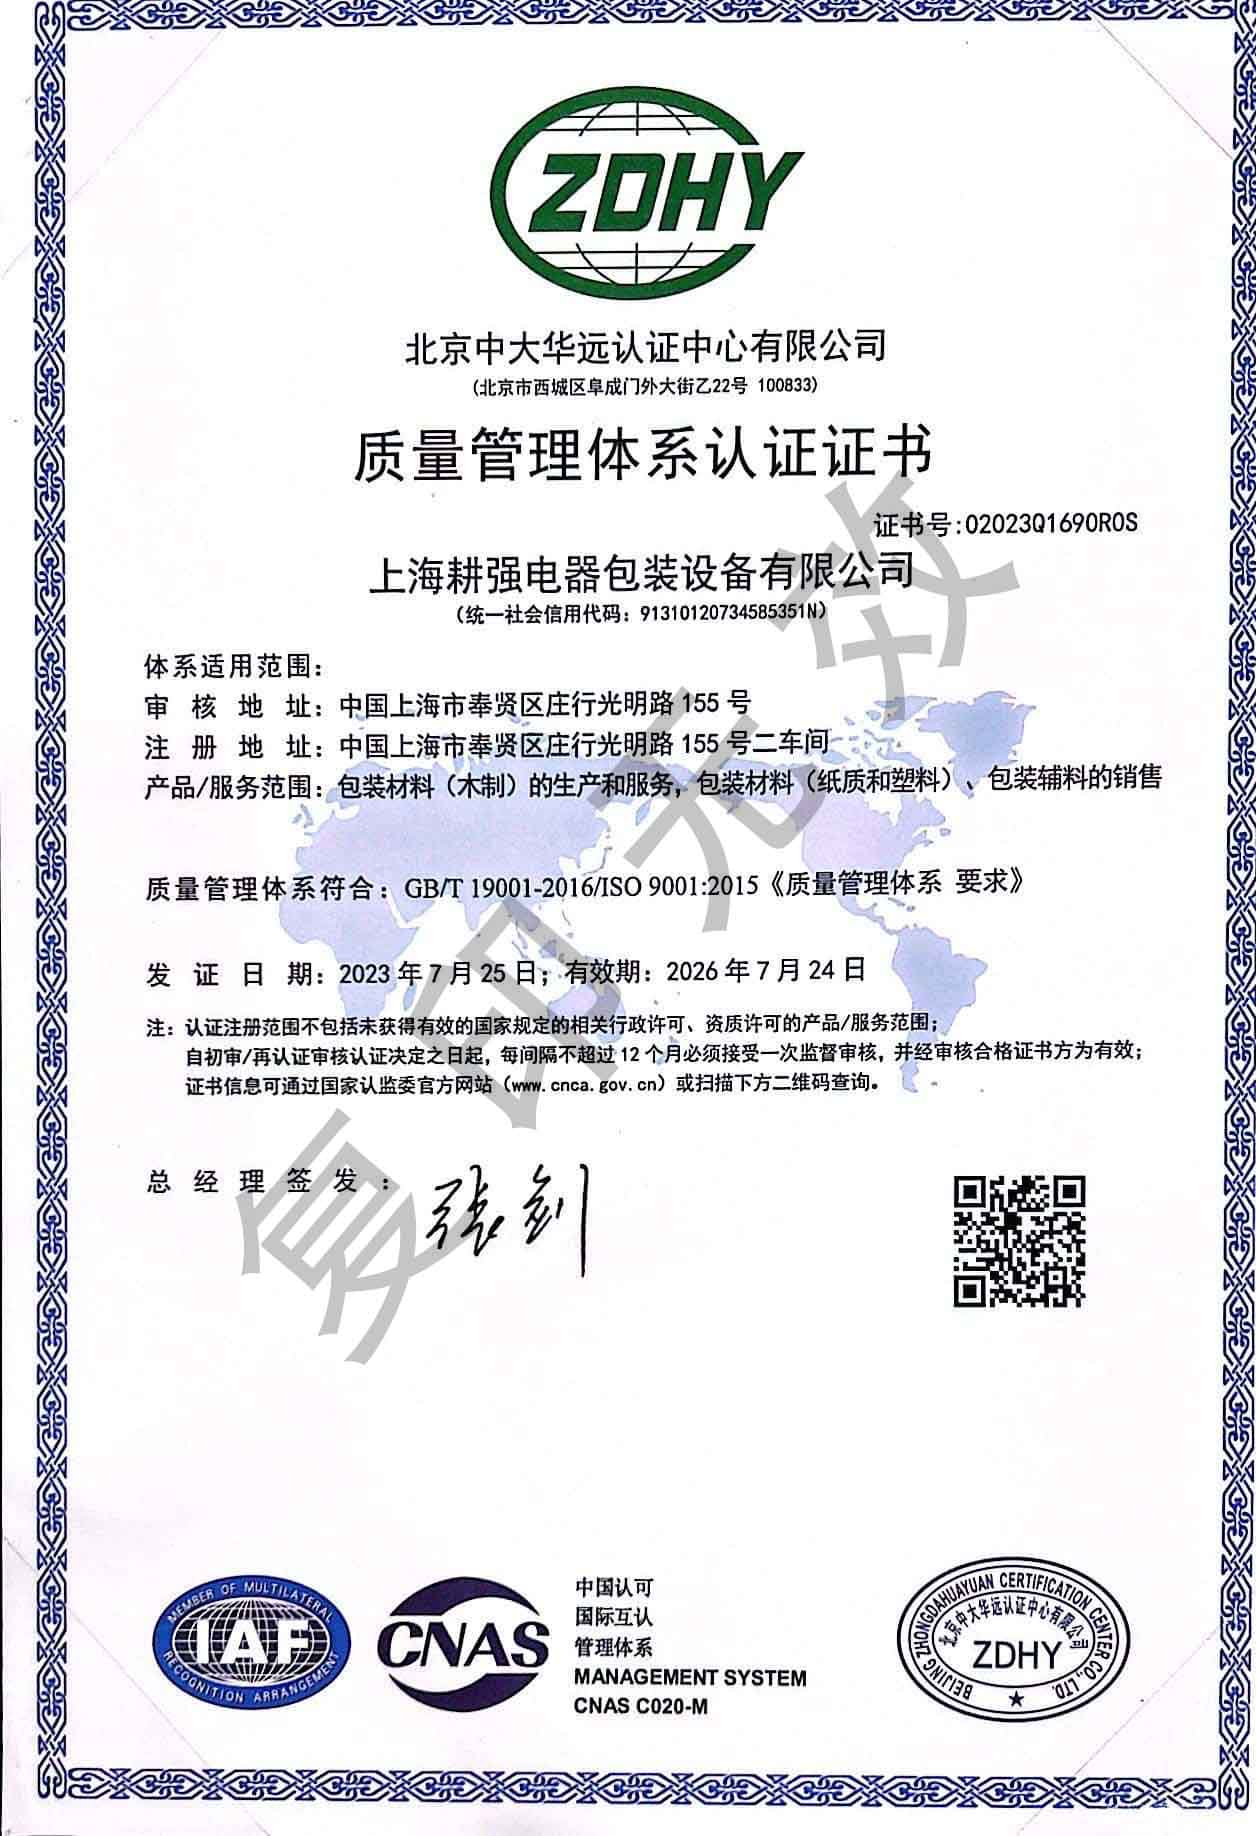 上海耕强电器包装设备有限公司质量管理体系ISO9001认证证书